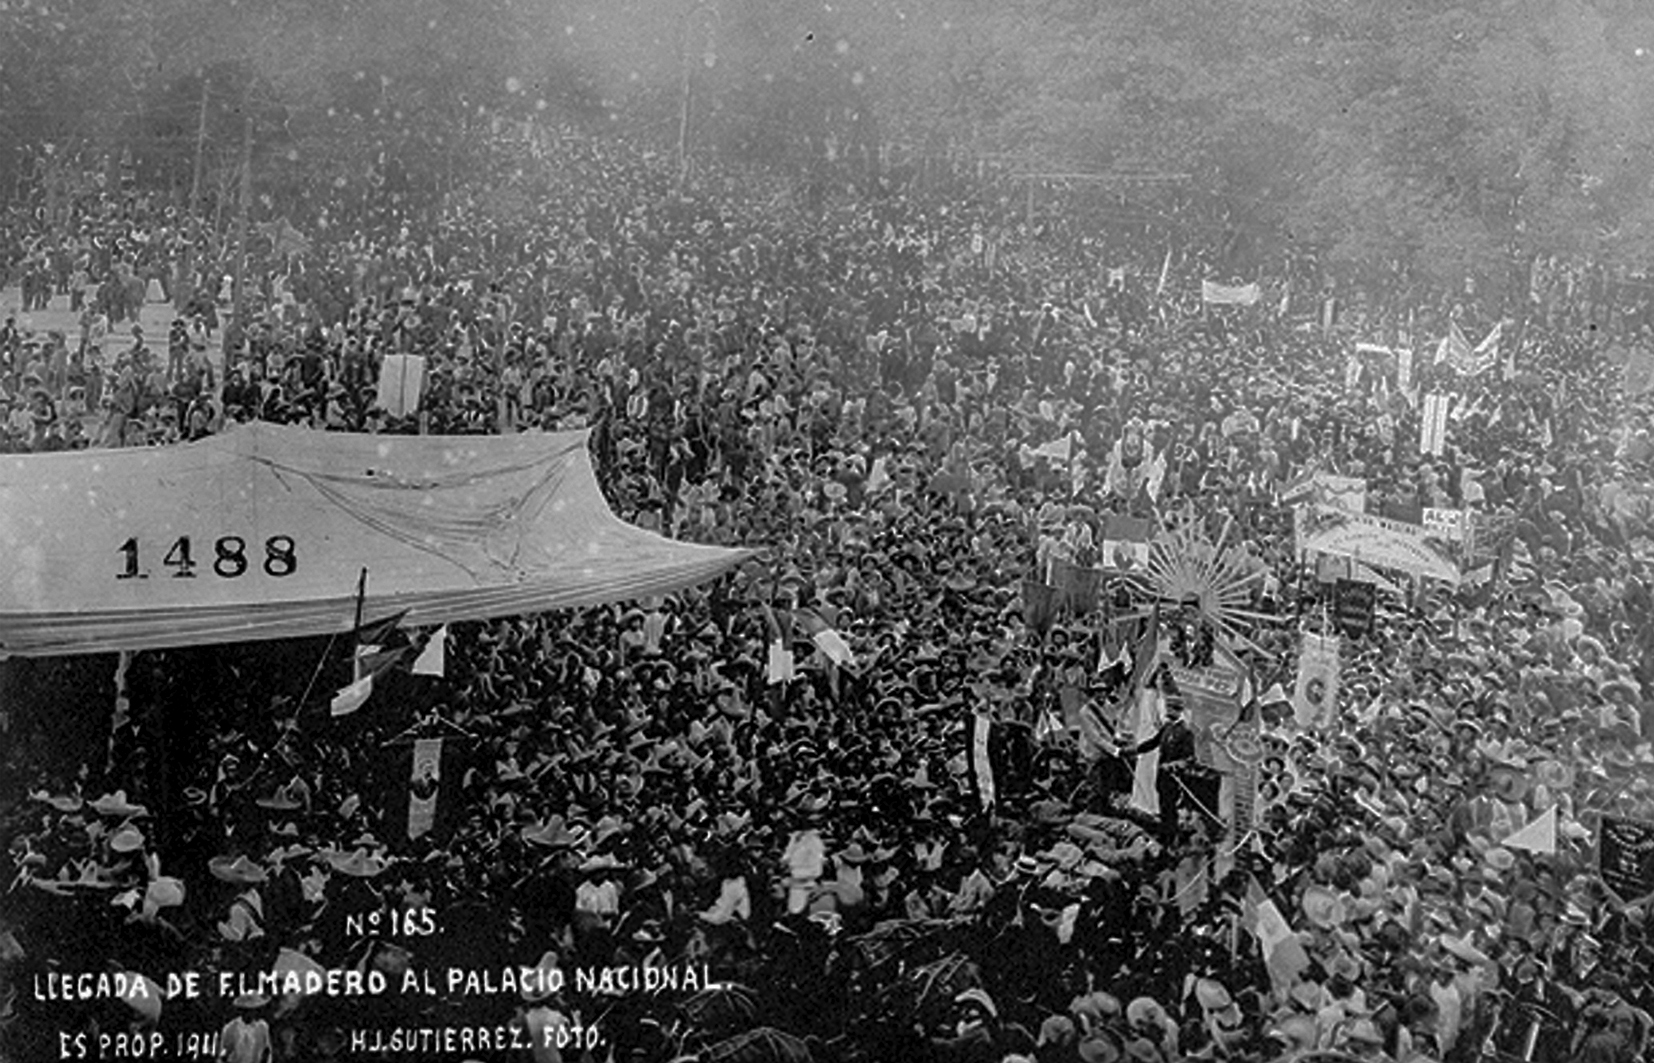 /cms/uploads/image/file/331686/Madero_llega_a_Palacio_Nacional_6_de_noviembre_de_1911.jpg